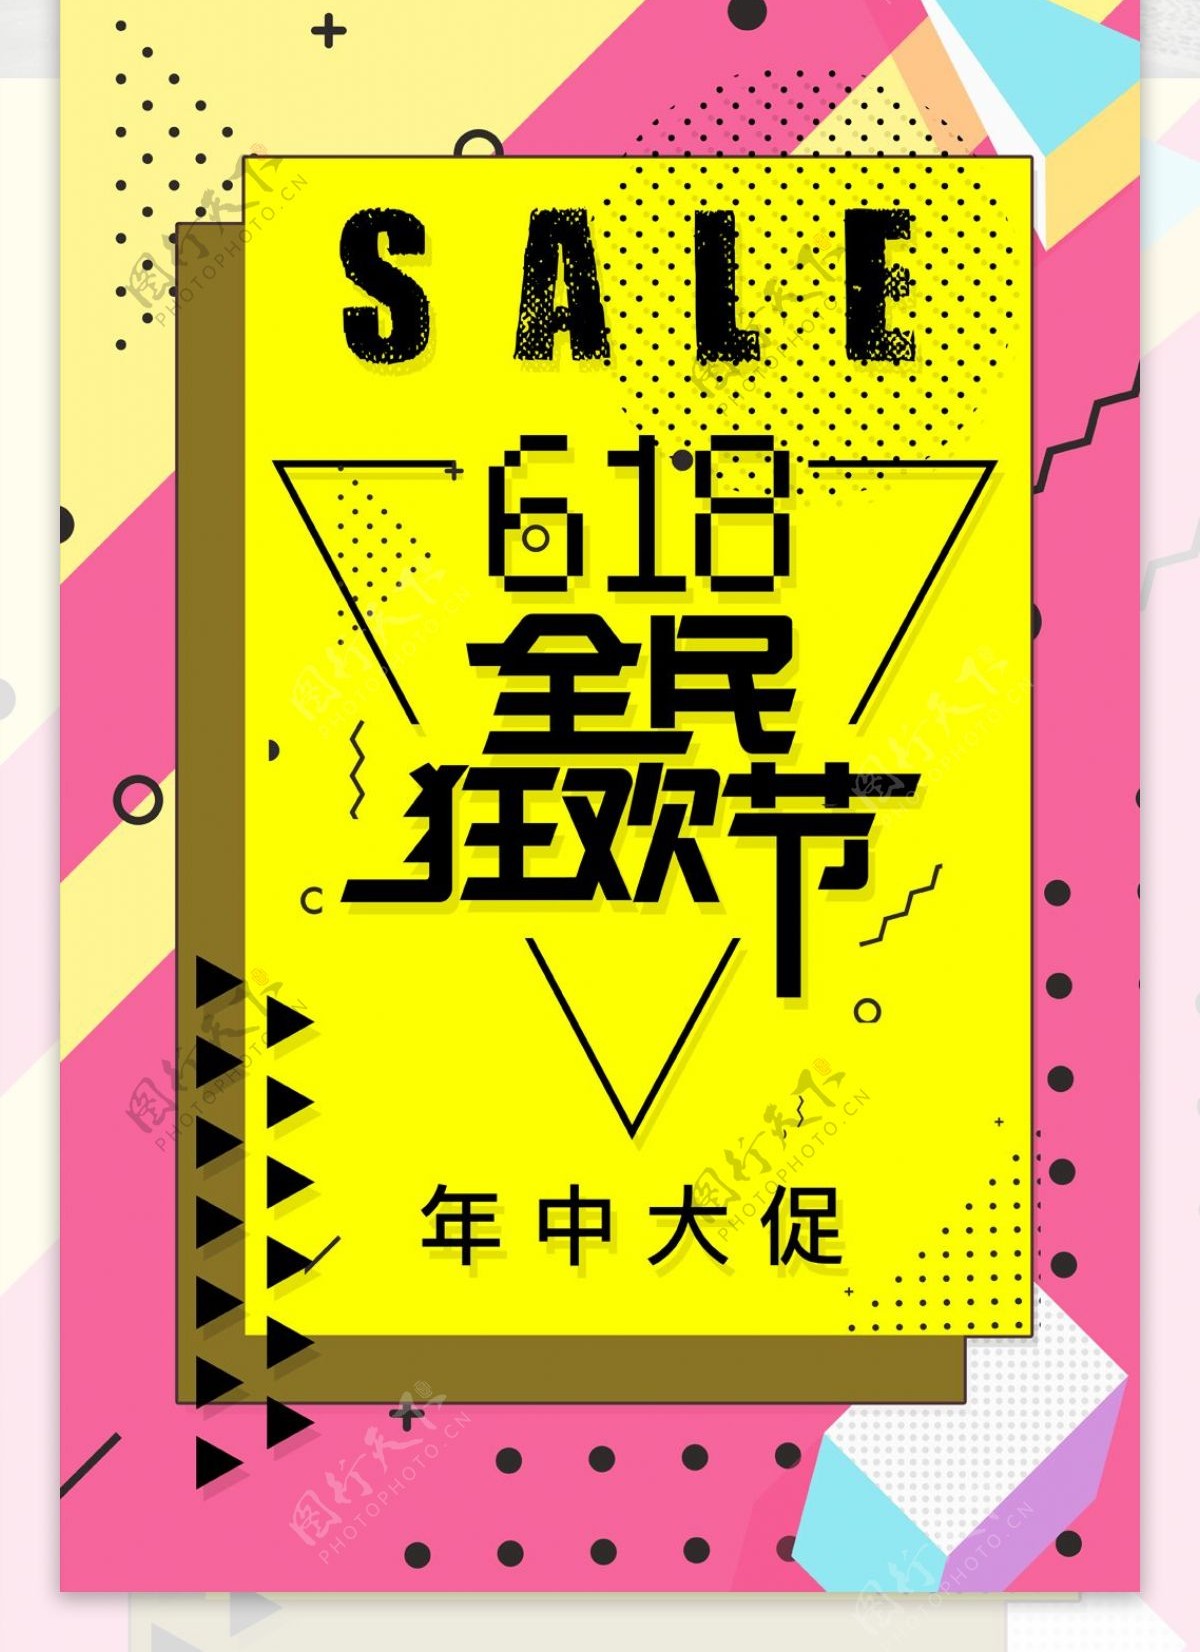 618全民狂欢节促销海报炫彩